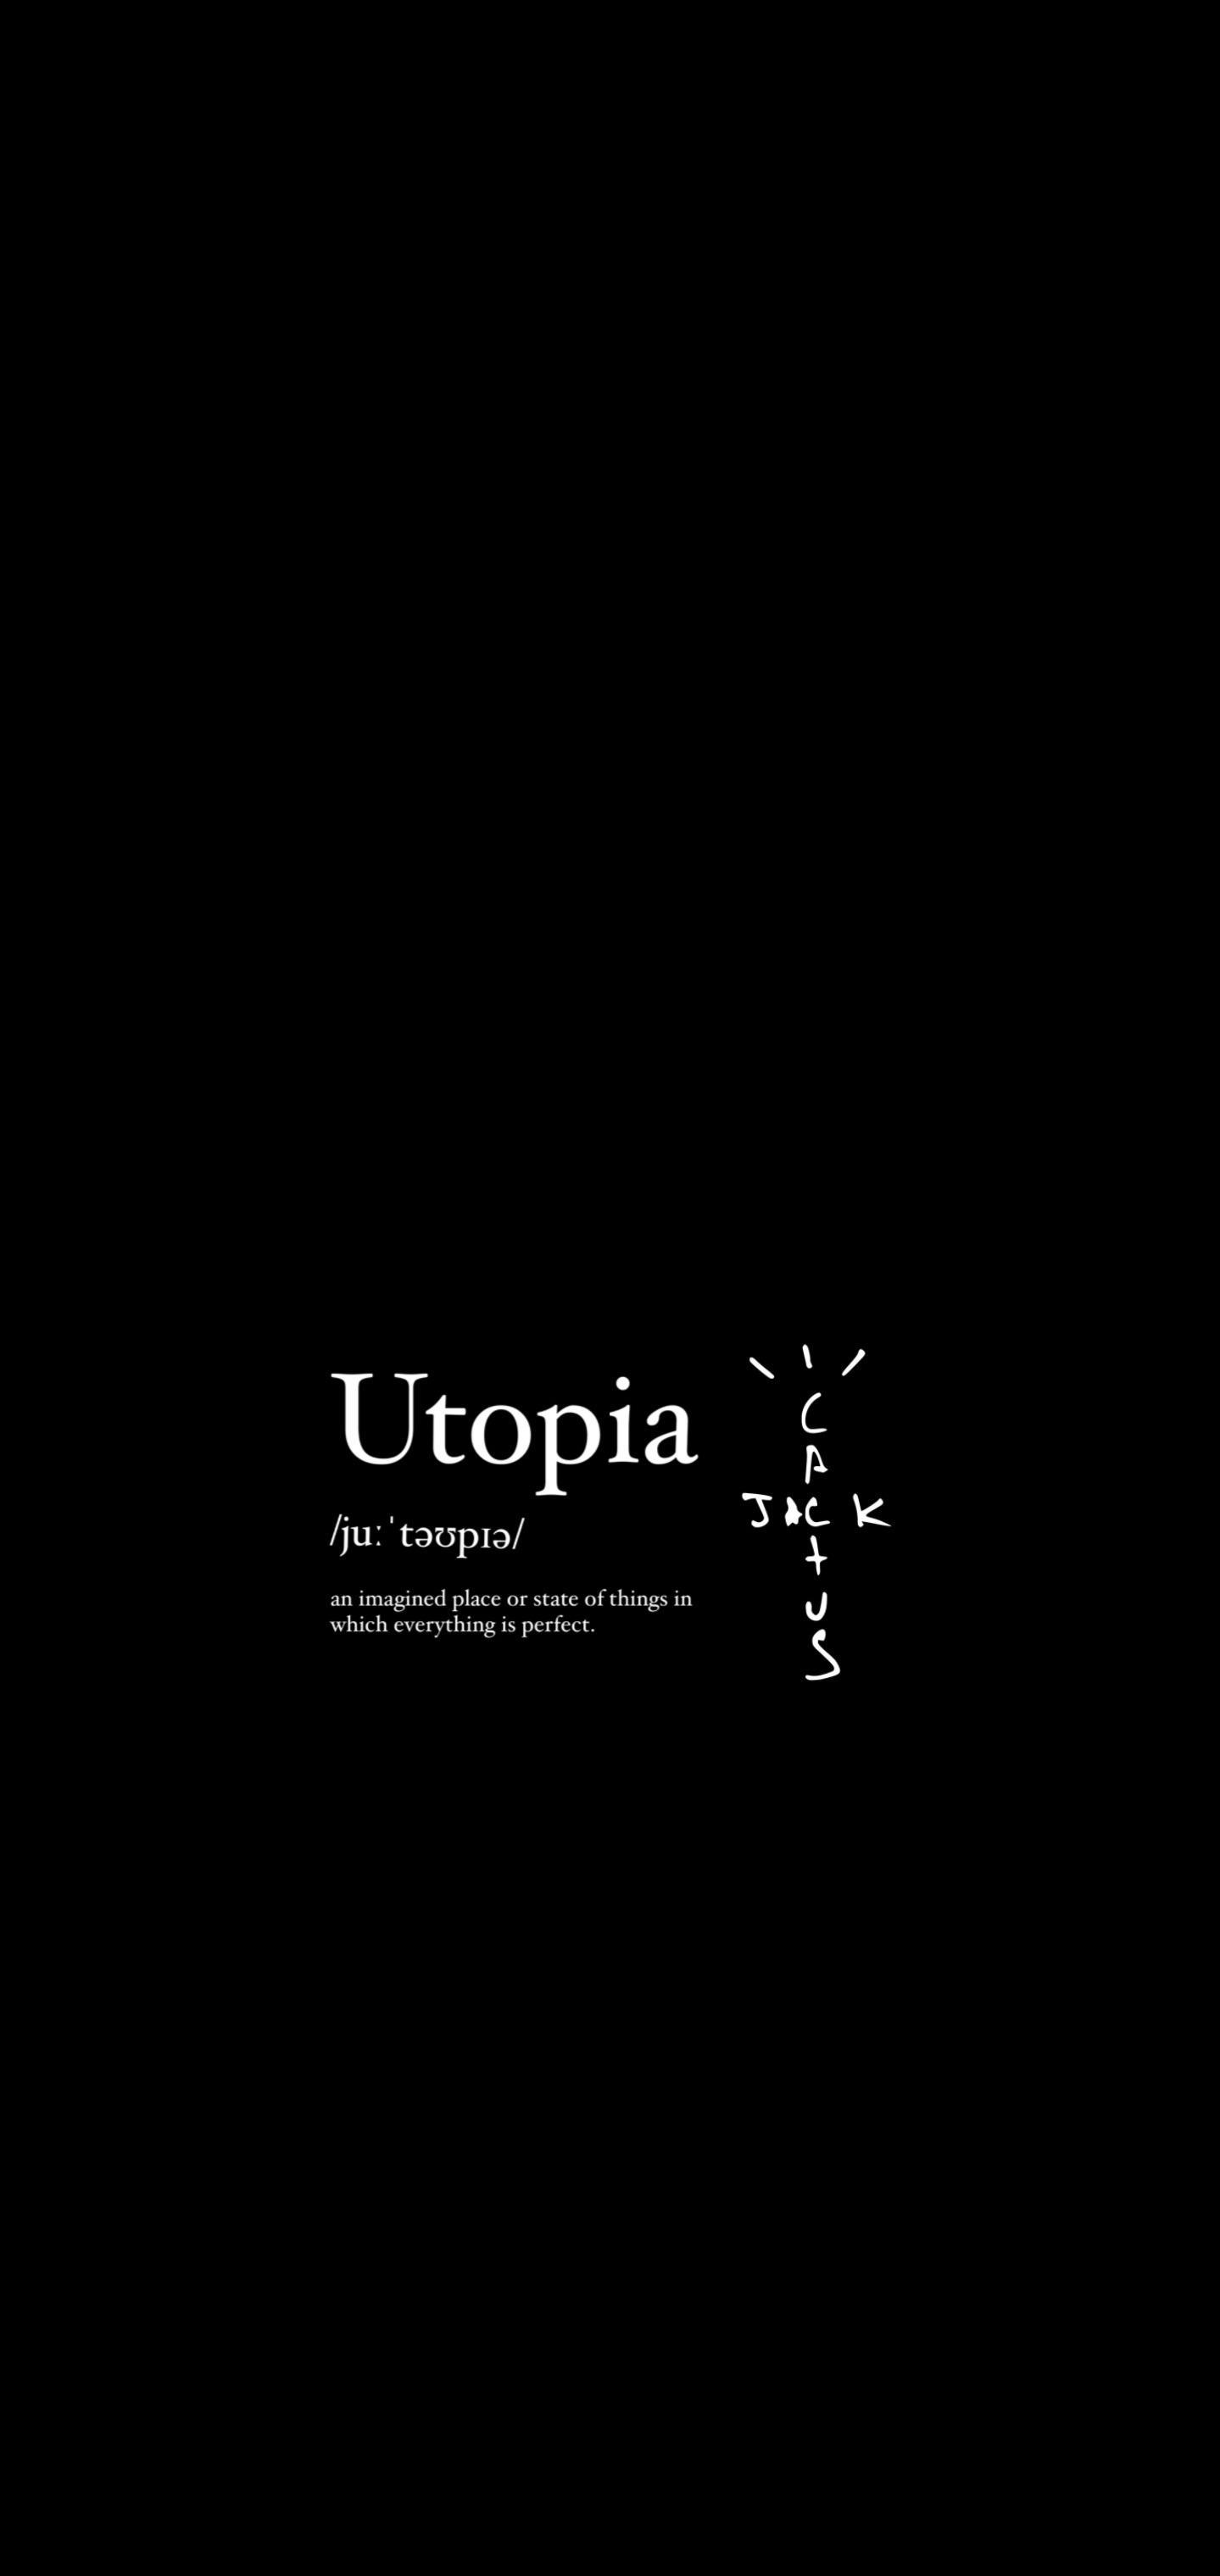 Utopia Concept Logo Wallpaper  rtravisscott